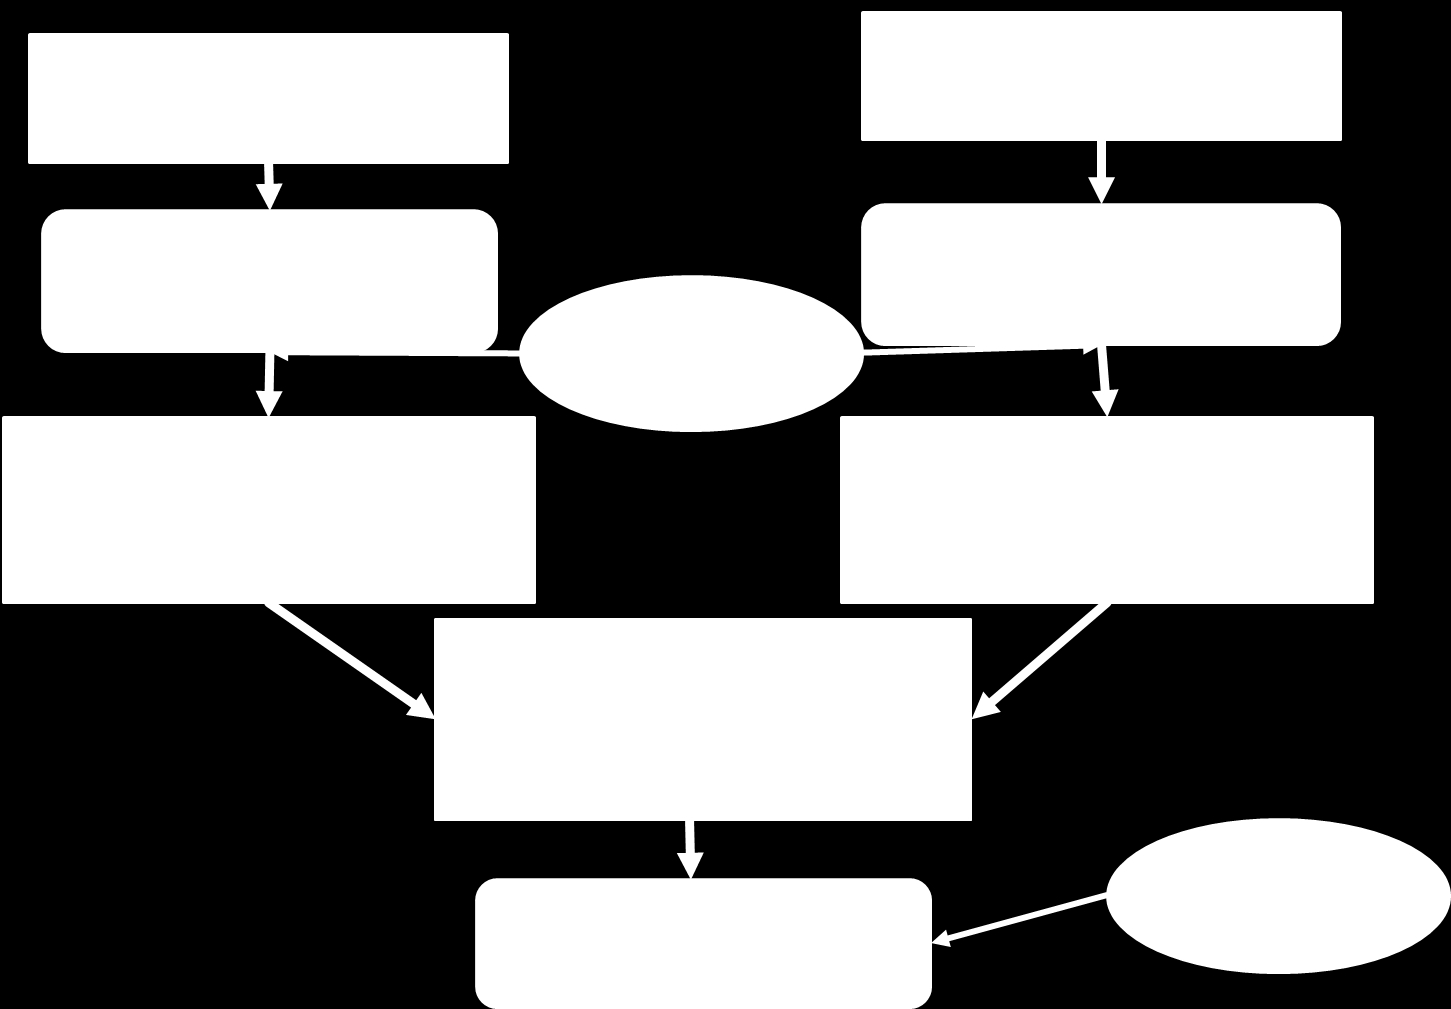 Σχήμα 1 Διάγραμμα ροής εμπειρικής μεθόδου 8 Περιγραφή της μεθοδολογίας Στη συγκεκριμένη παράγραφο περιγράφεται αρχικά η συμβολομετρική διαδικασία για την παραγωγή των ψηφιακών υψομετρικών μοντέλων